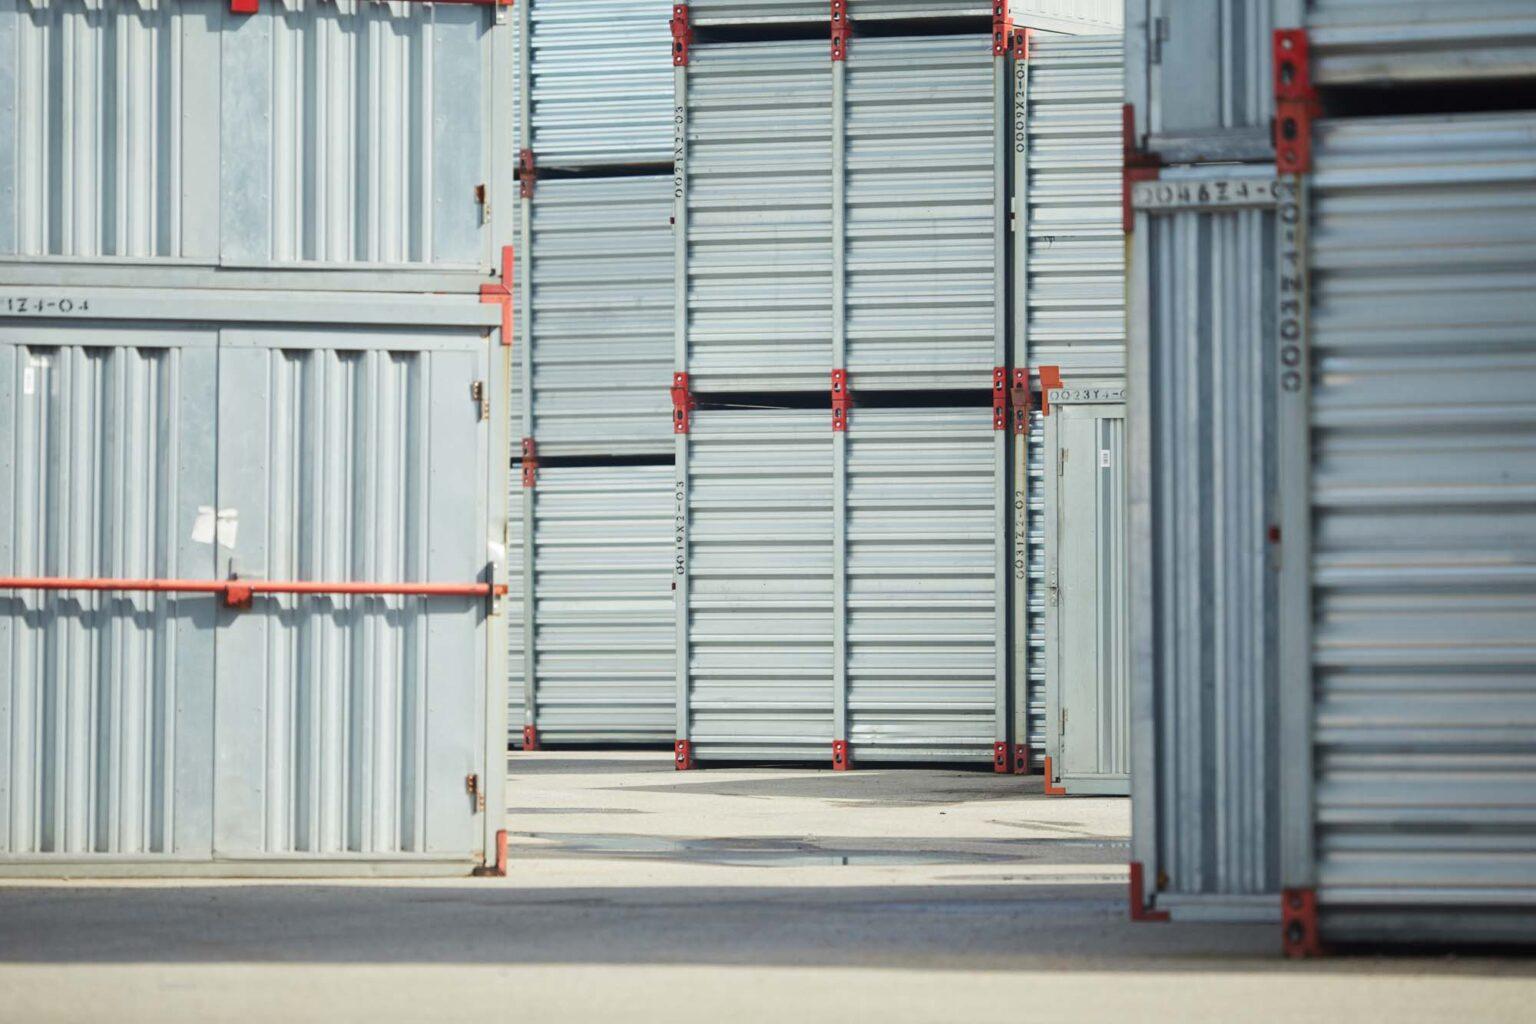 Storaco-Verhuur en verkoop van containers, Containerverhuur Antwerpen